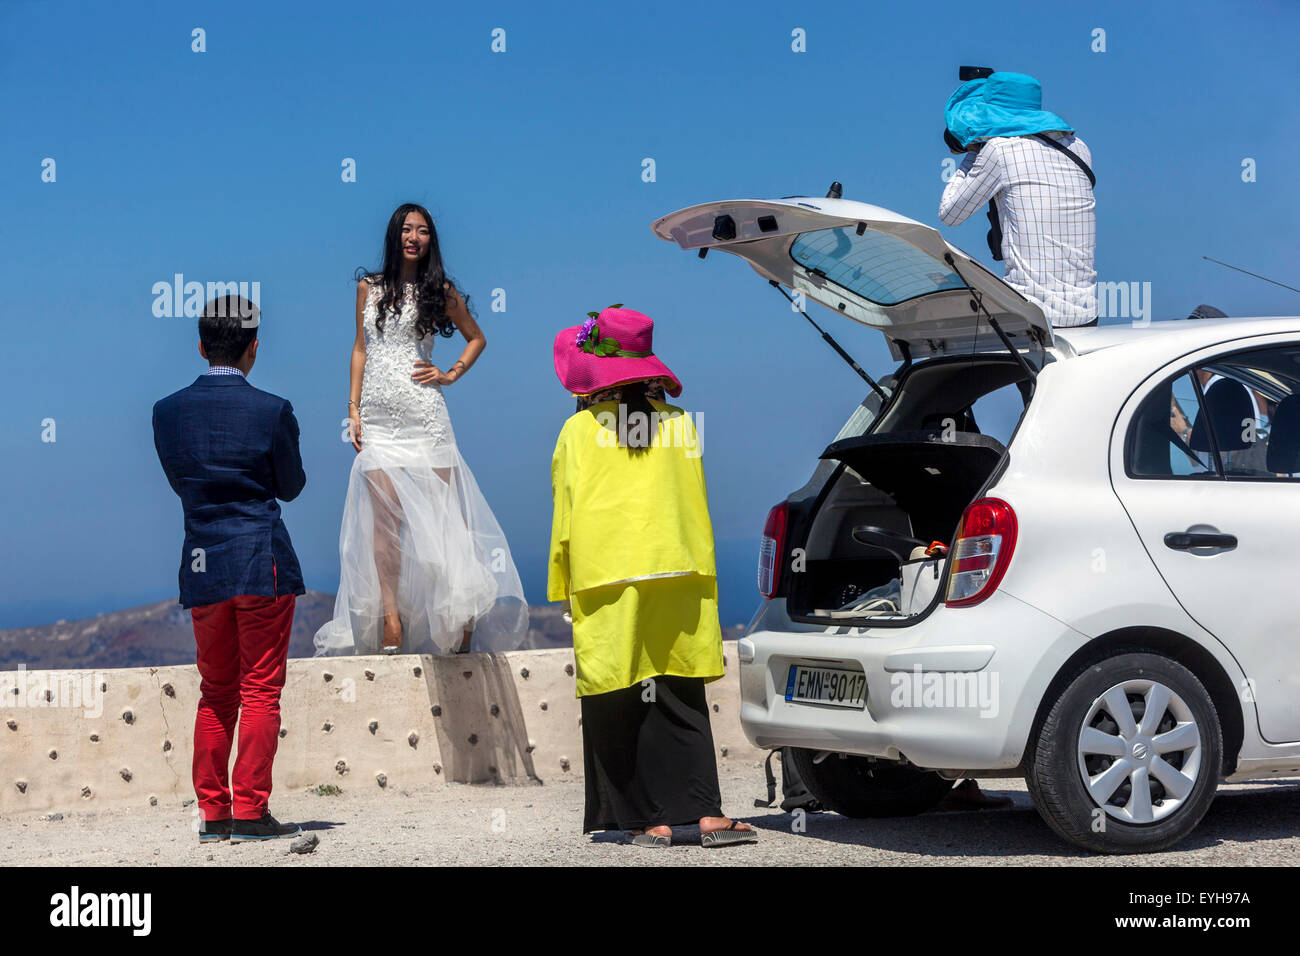 Asiatischen Menschen, Frau in Wedding Dress posieren für die Fotografen. Firostefani, Santorini, griechische Inseln, Griechenland, EU, Europa Stockfoto